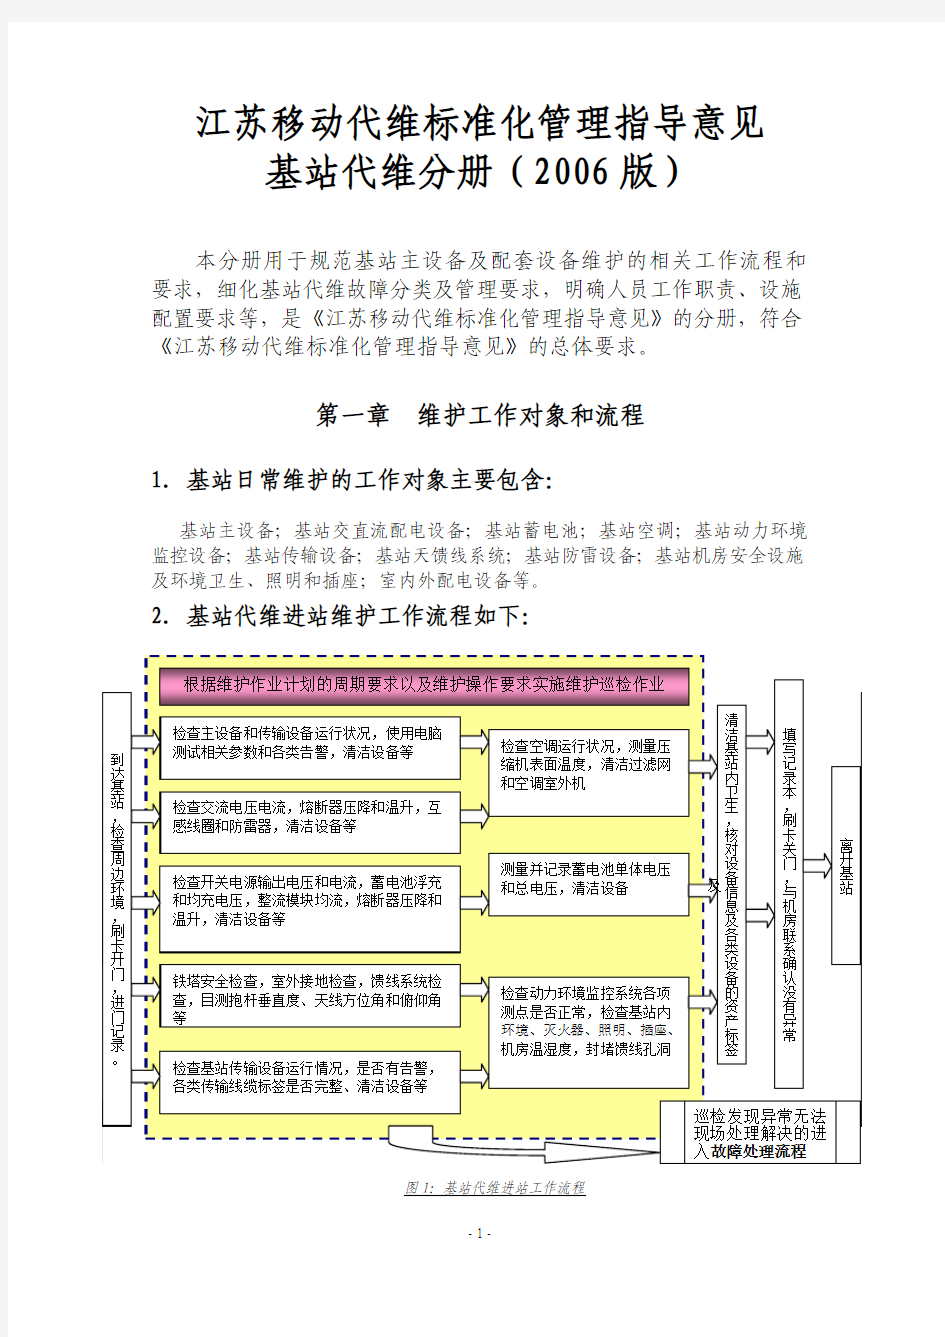 江苏移动代维标准化管理指导意见基站分册(2006版)